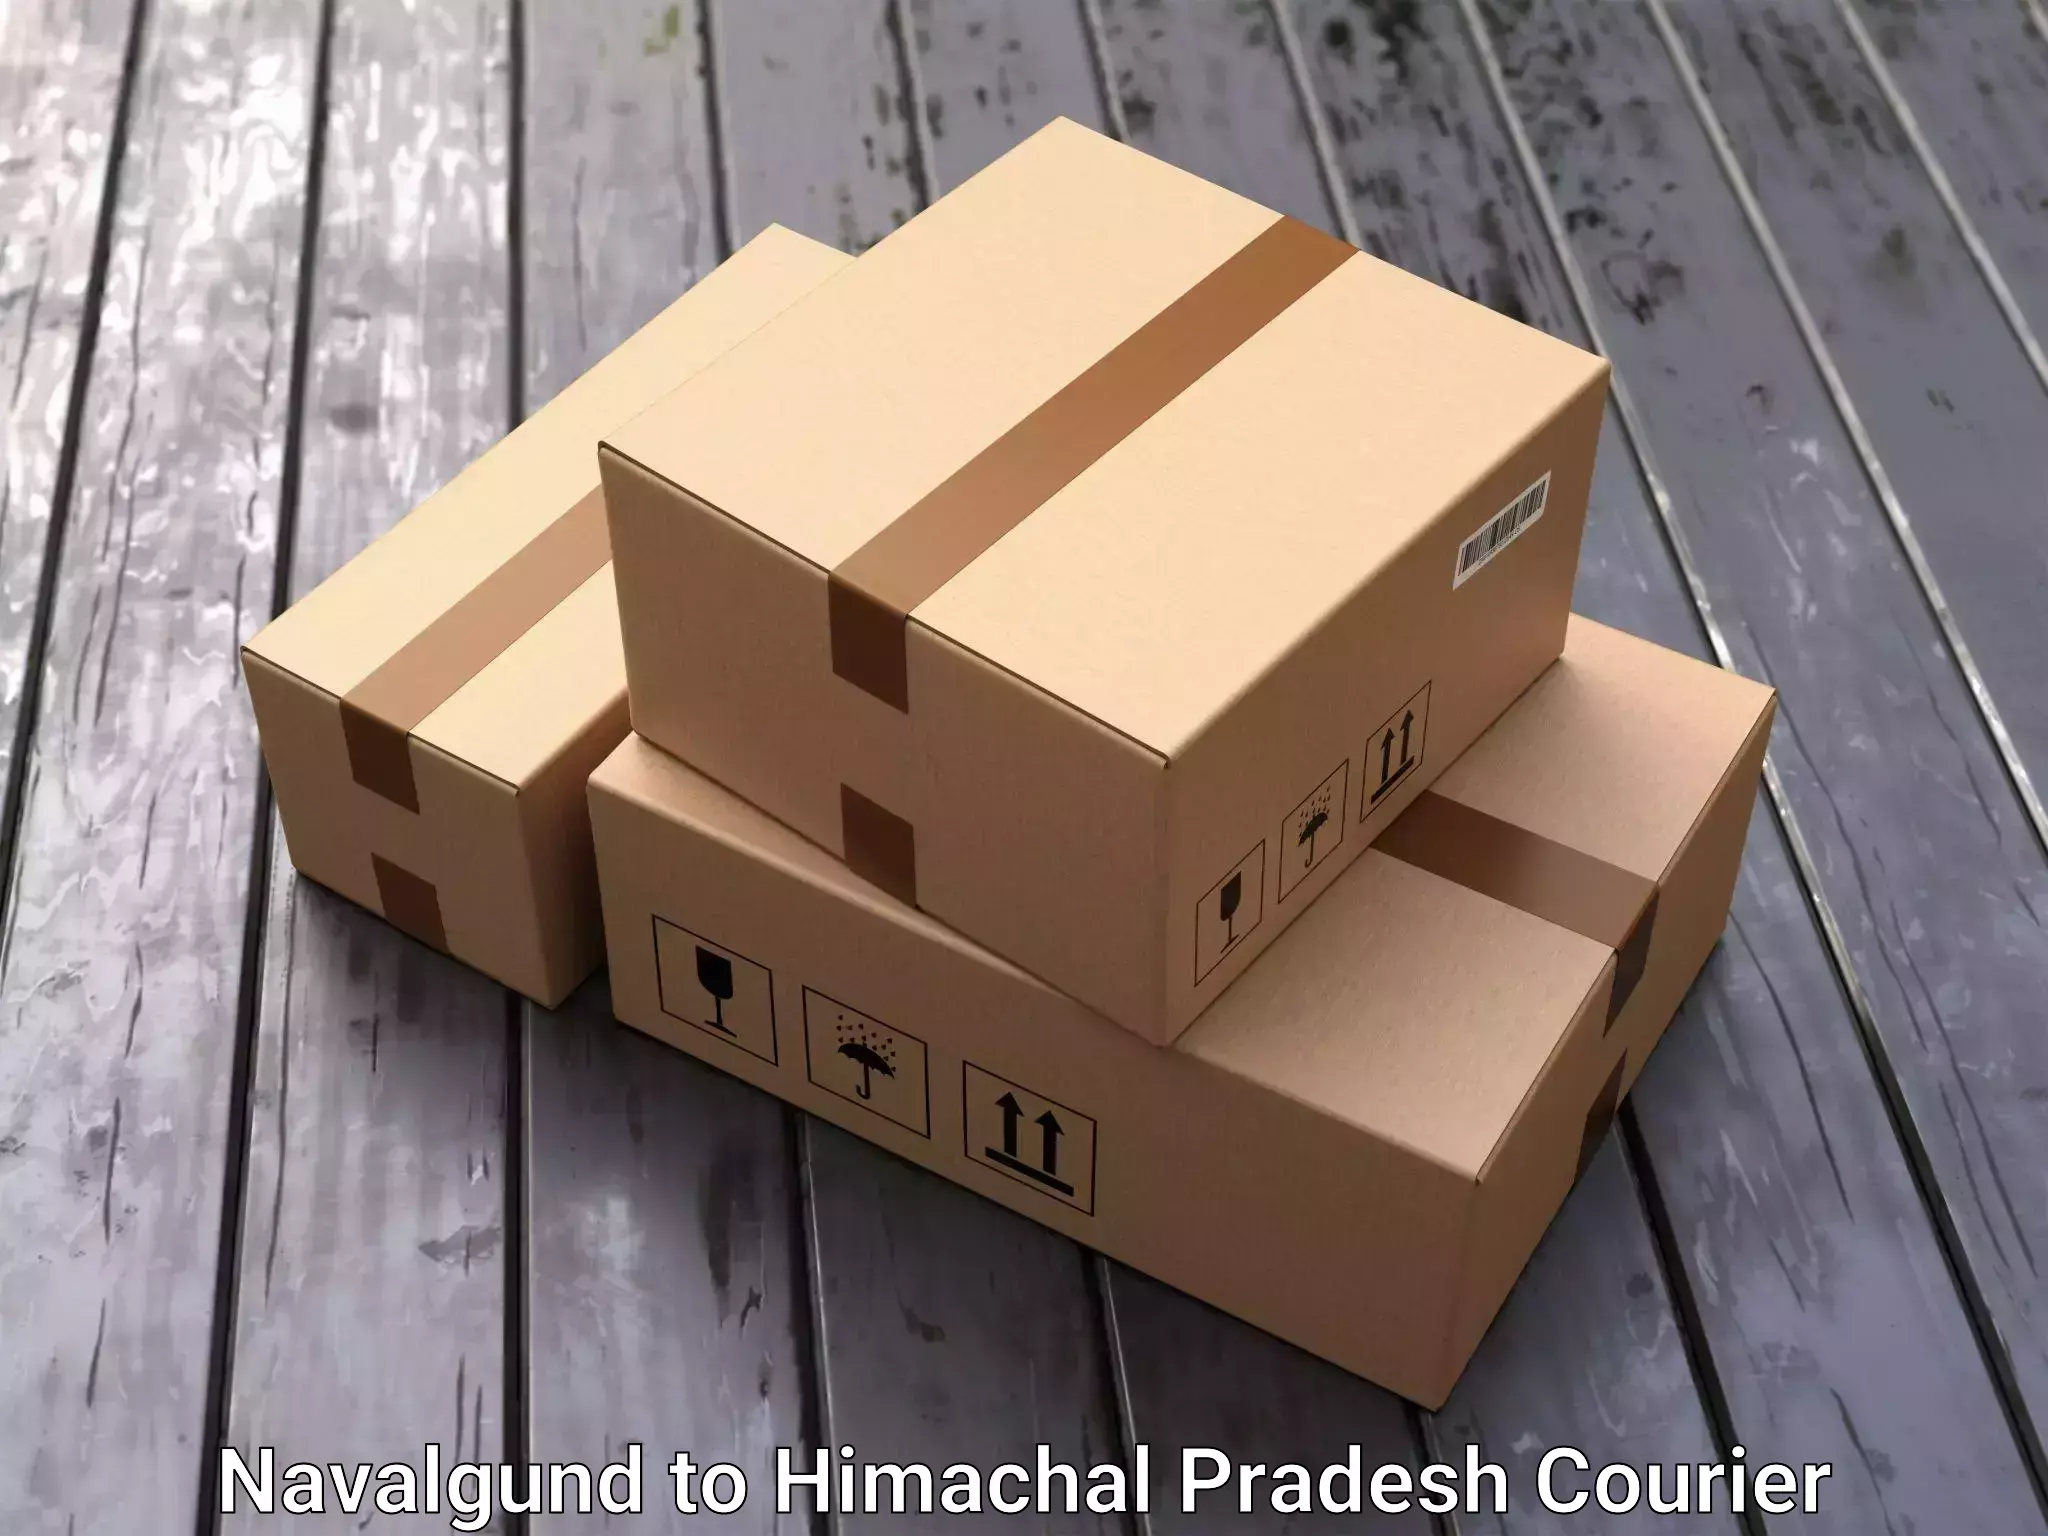 Furniture moving experts Navalgund to Himachal Pradesh